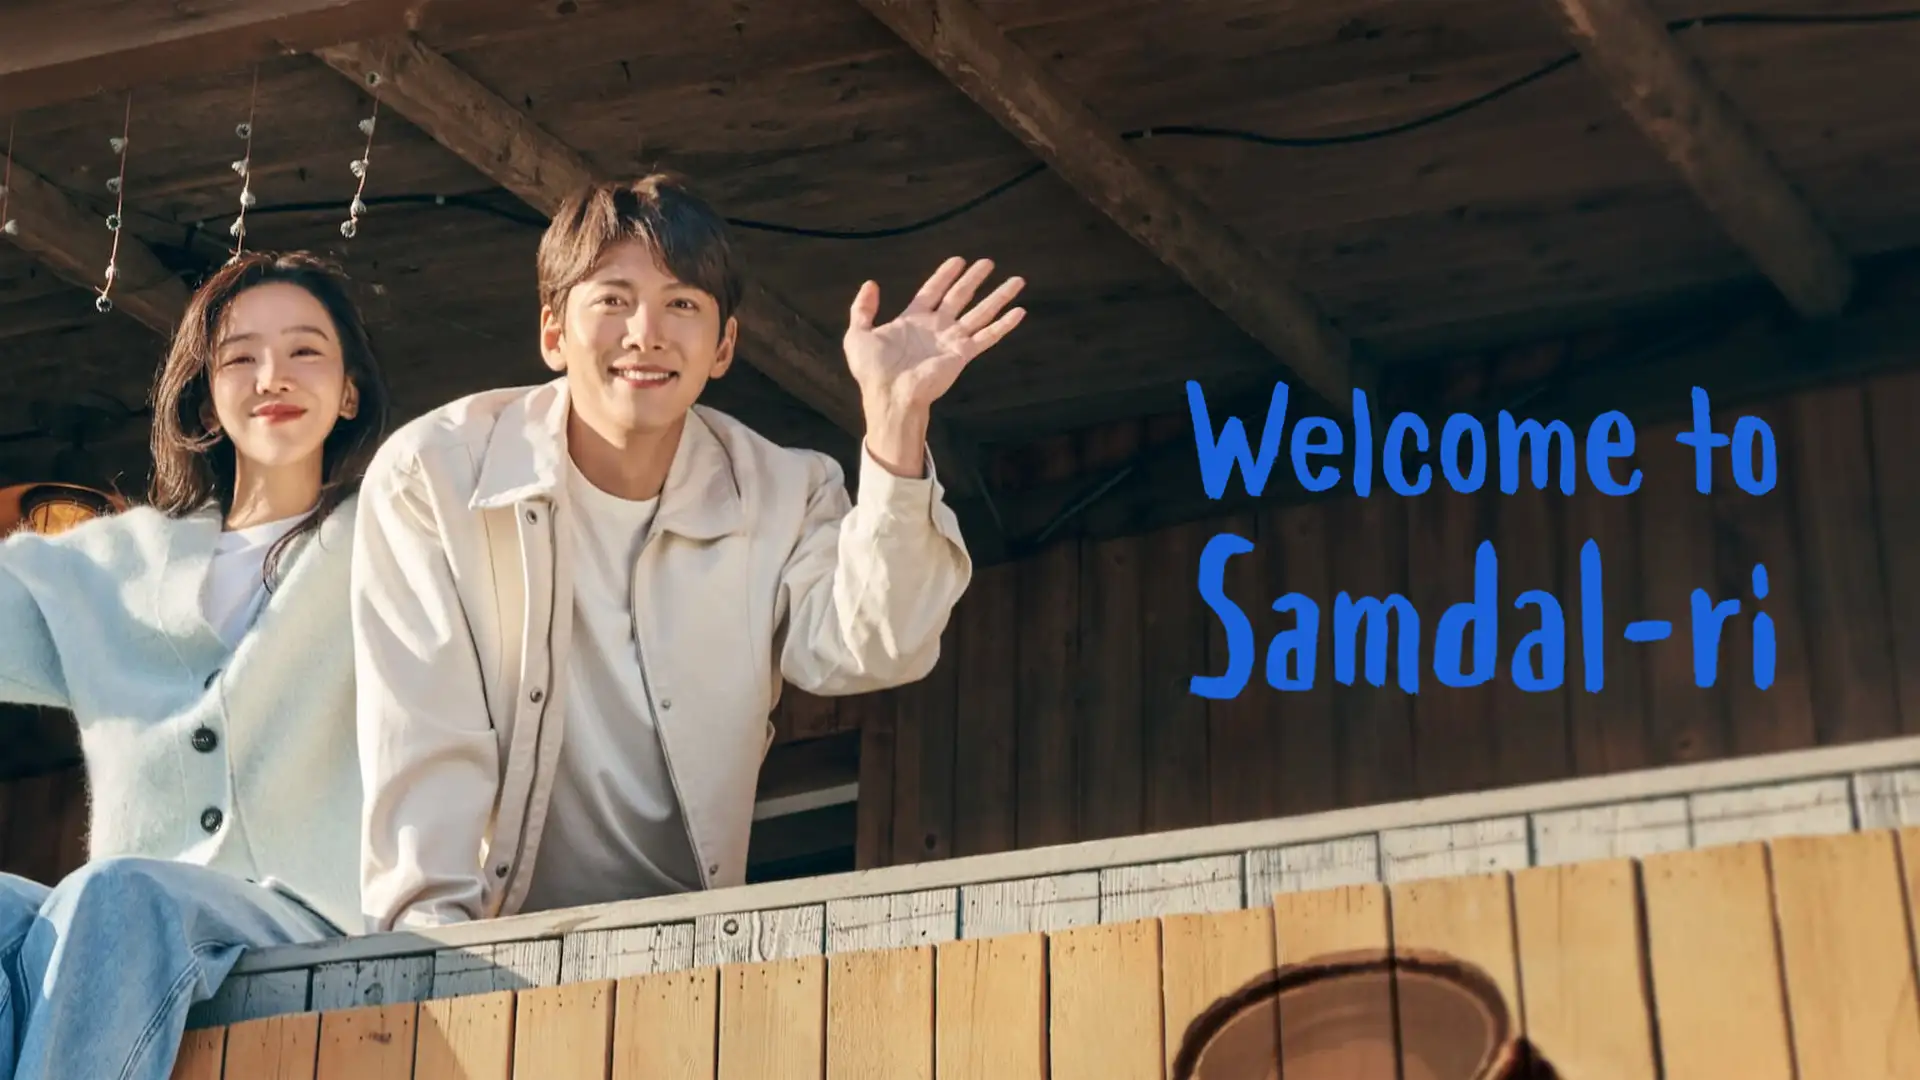 به سامدالری خوش آمدید